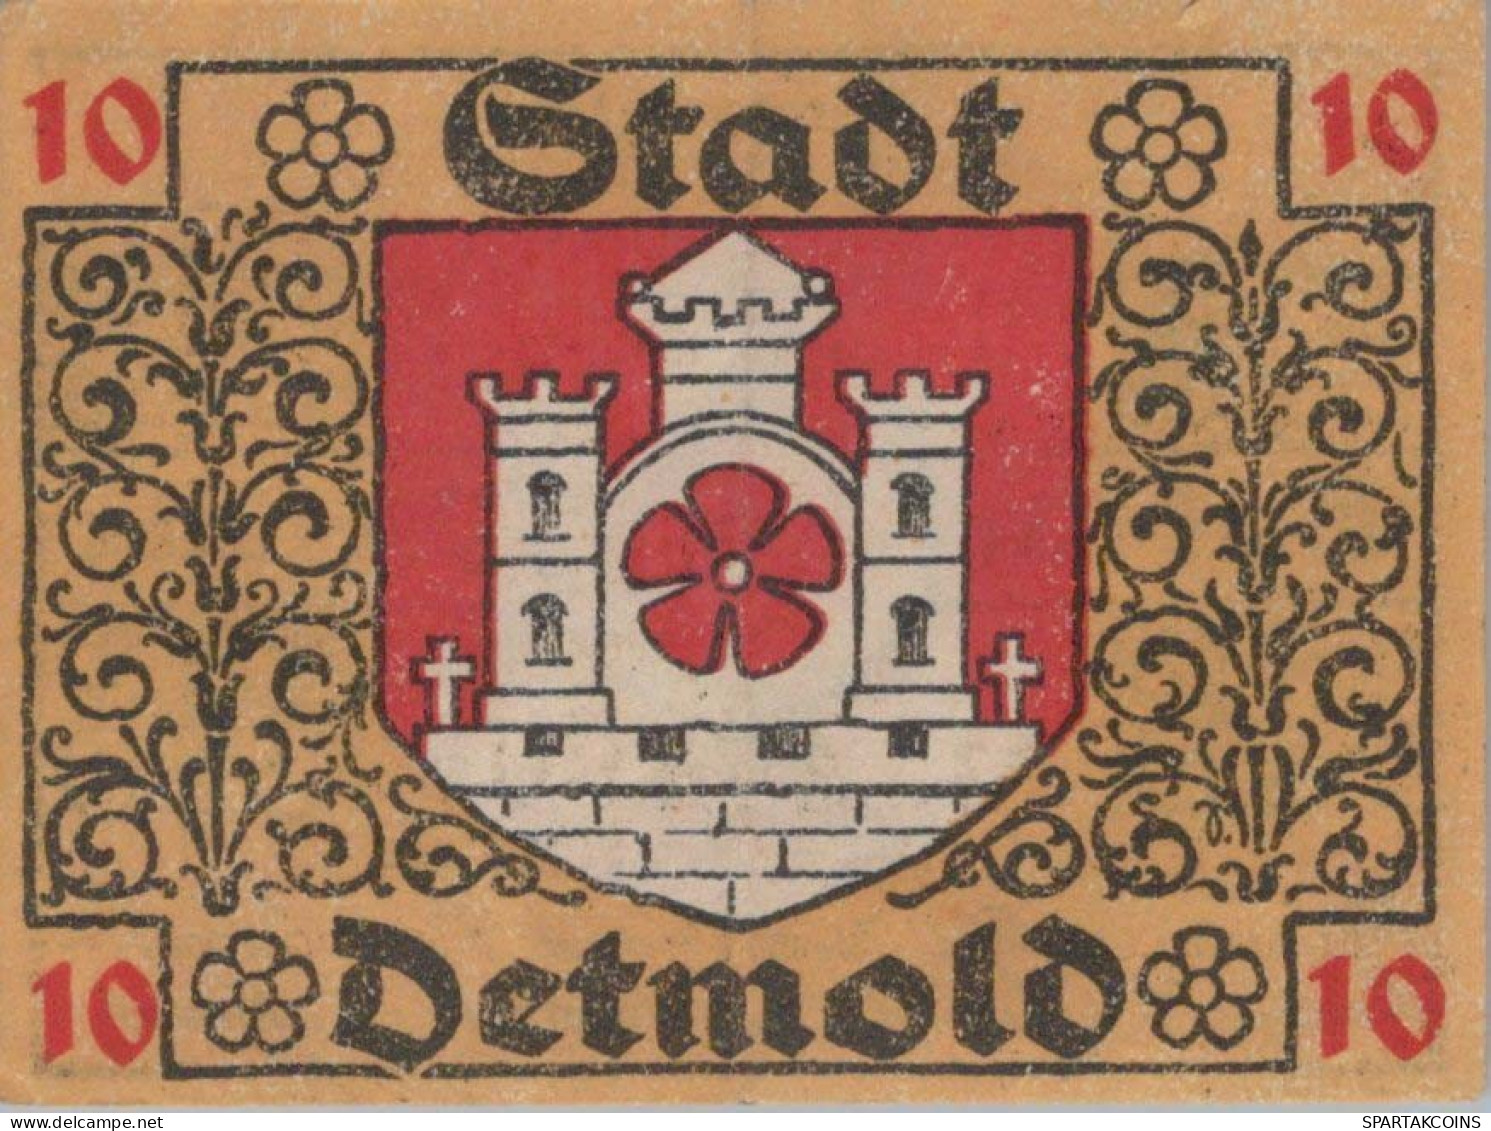 10 PFENNIG 1920 Stadt DETMOLD Lippe UNC DEUTSCHLAND Notgeld Banknote #PA435 - [11] Local Banknote Issues